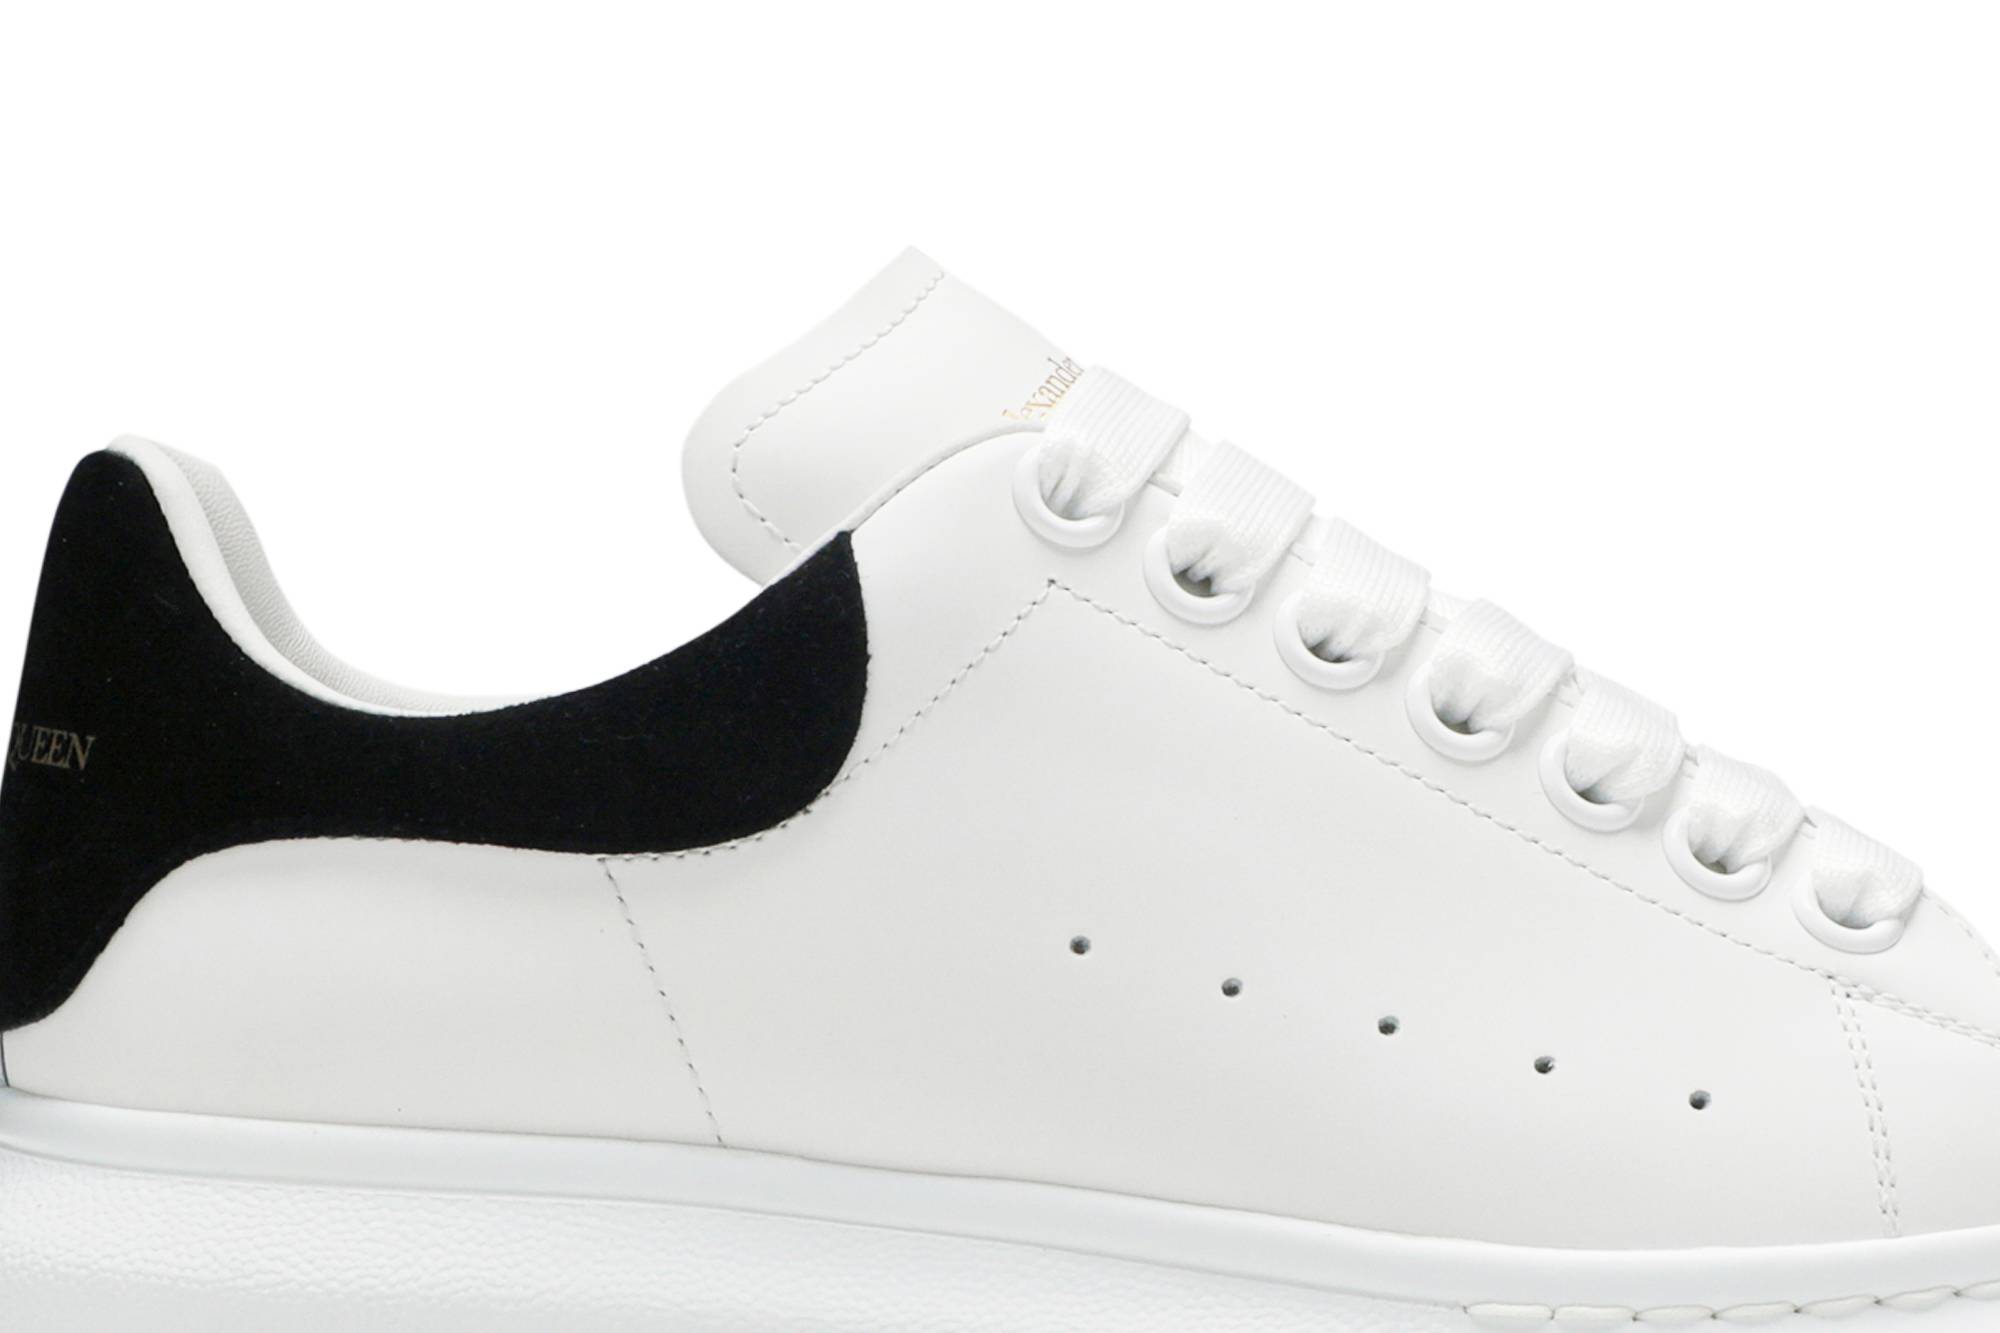 Alexander McQueen Oversized low-top sneakers - White